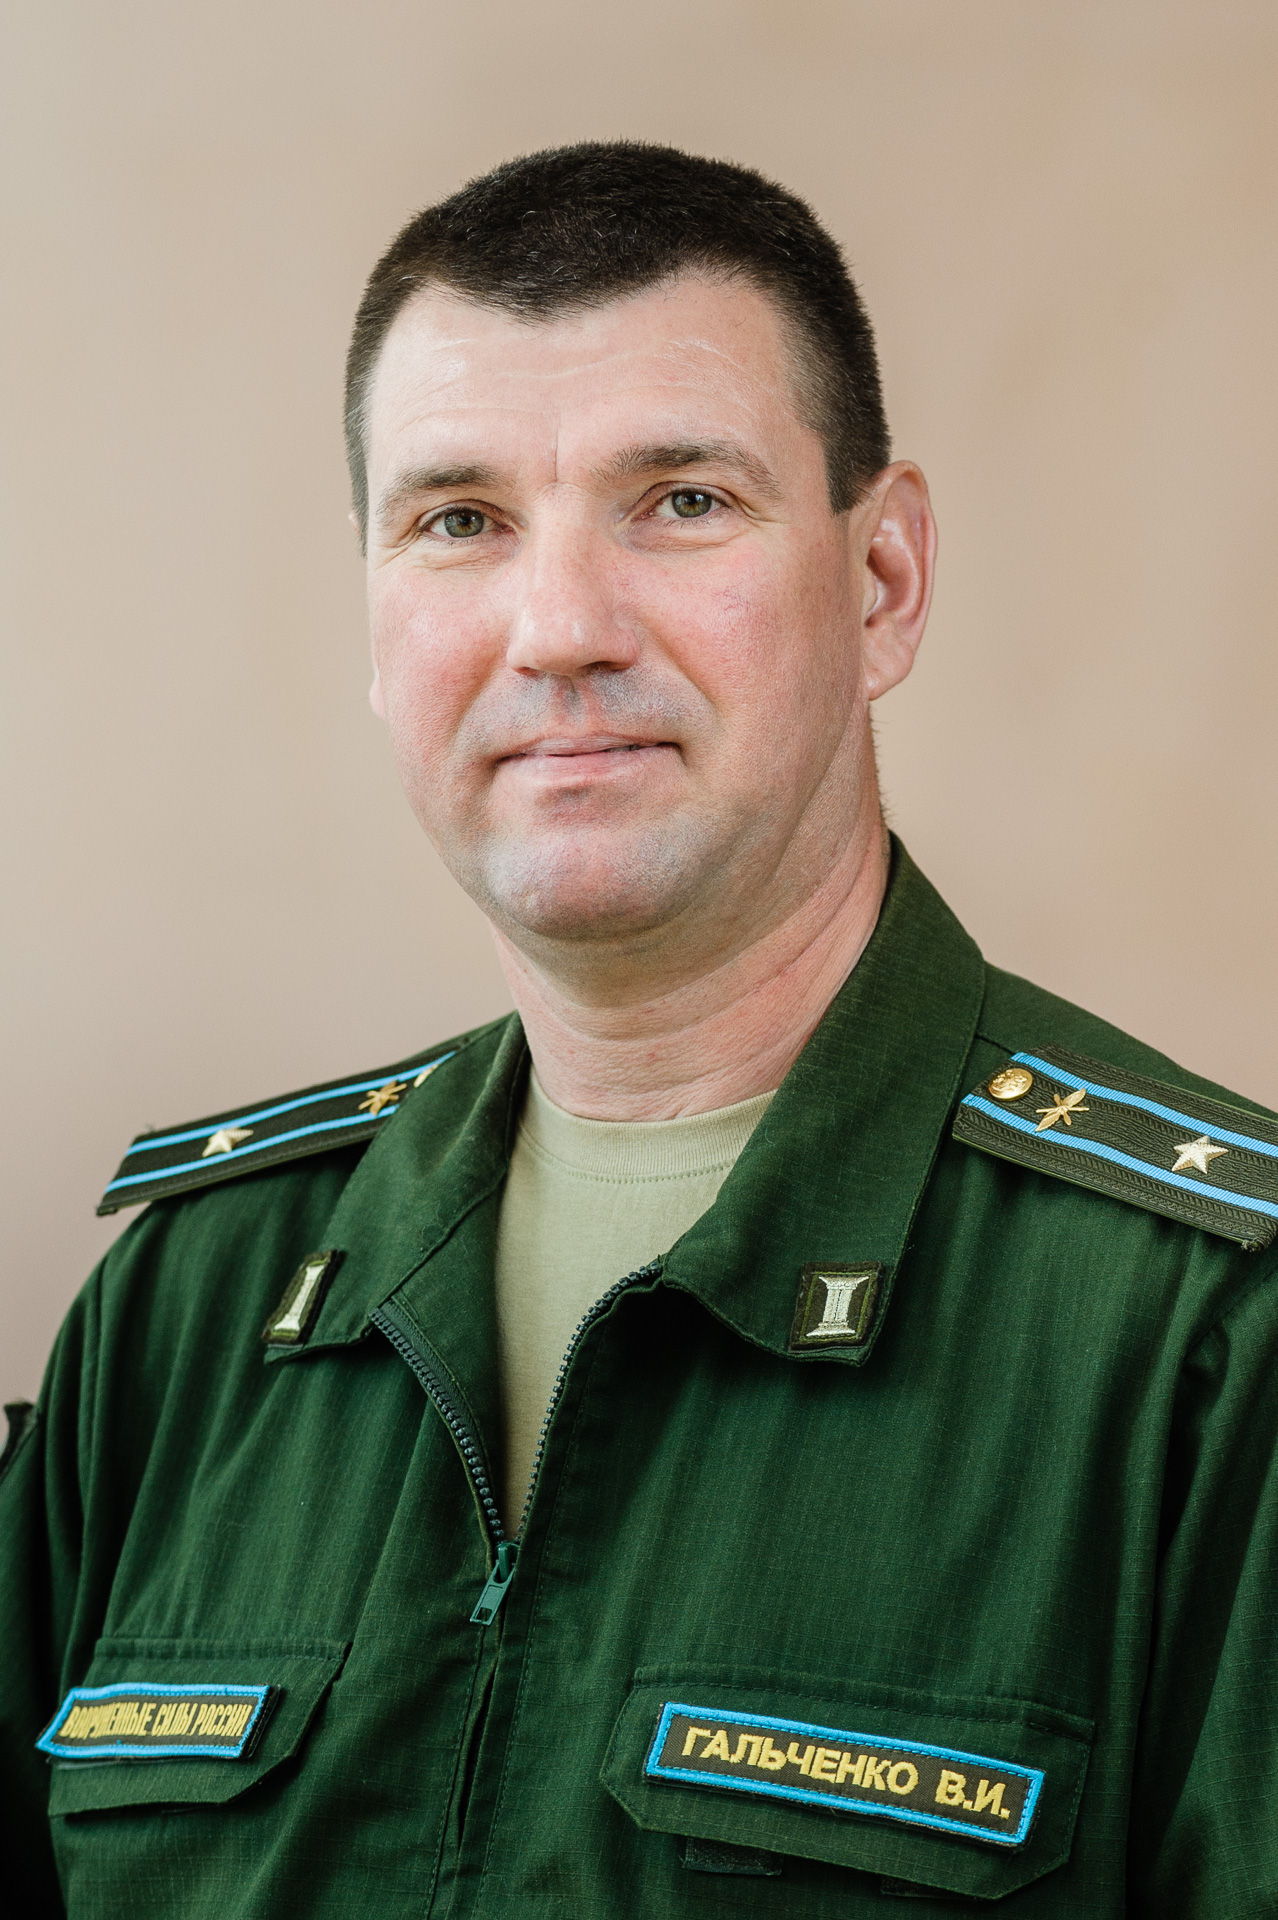 Гальченко Василий Иванович